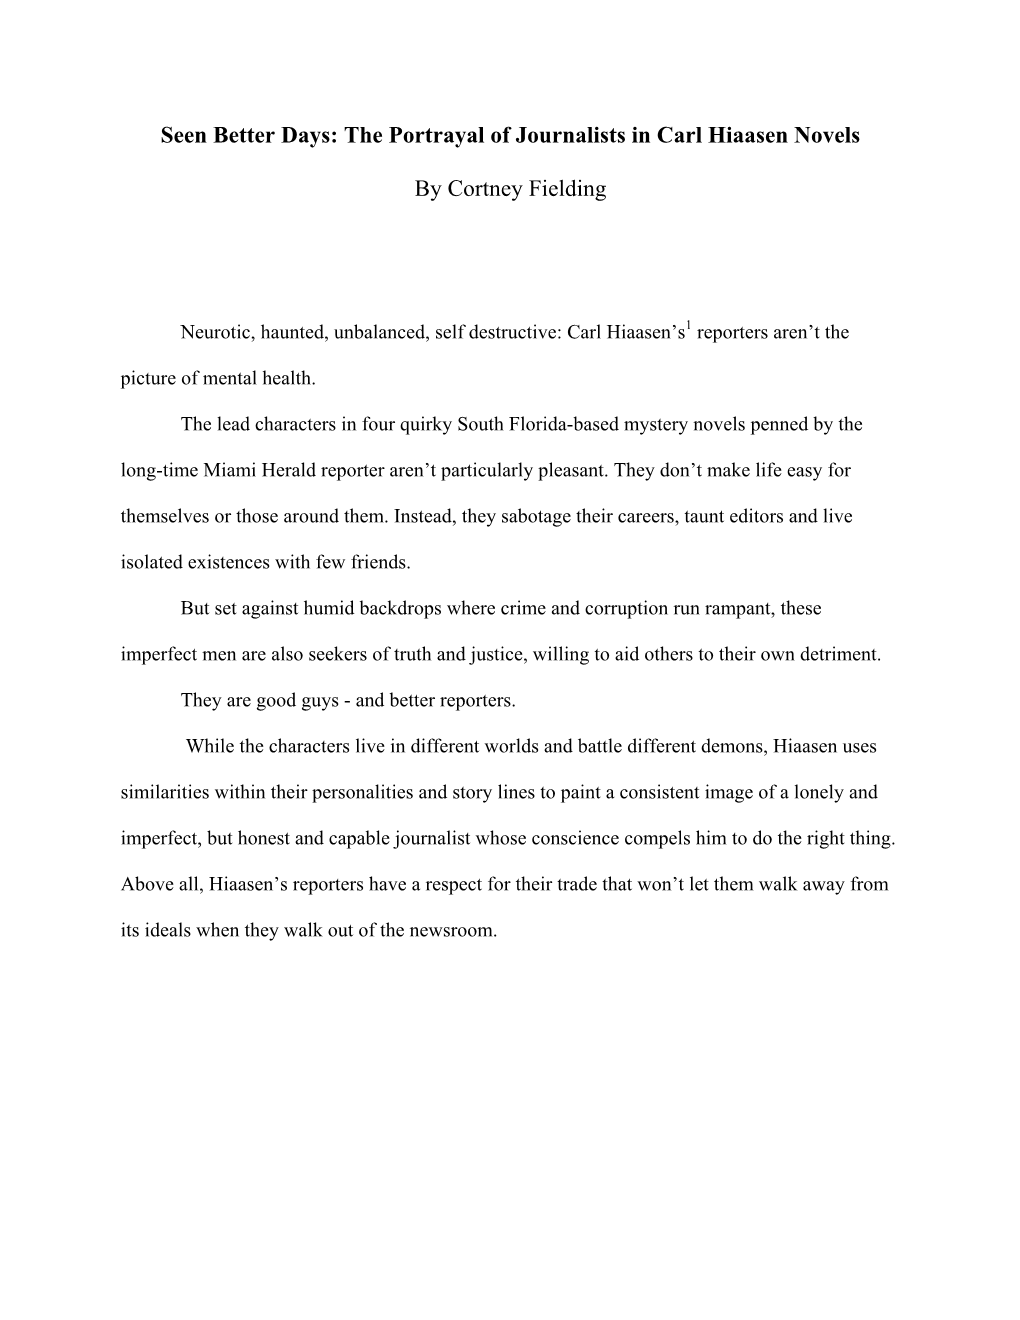 The Portrayal of Journalists in Carl Hiaasen Novels by Cortney Fielding